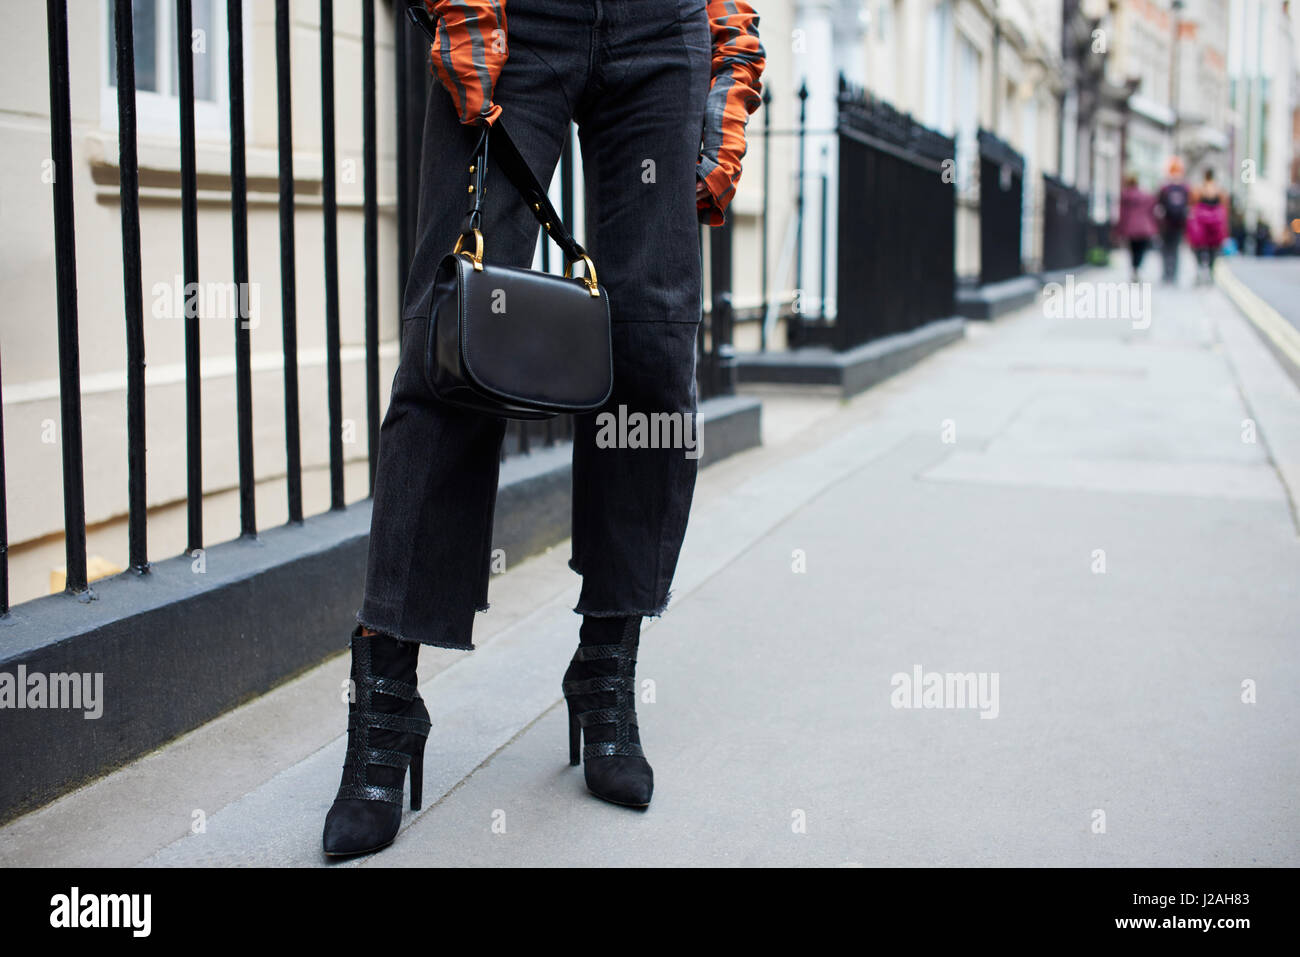 Frau in gestreiften Top tragen Designer-Handtasche, niedrige Abschnitt Stockfoto